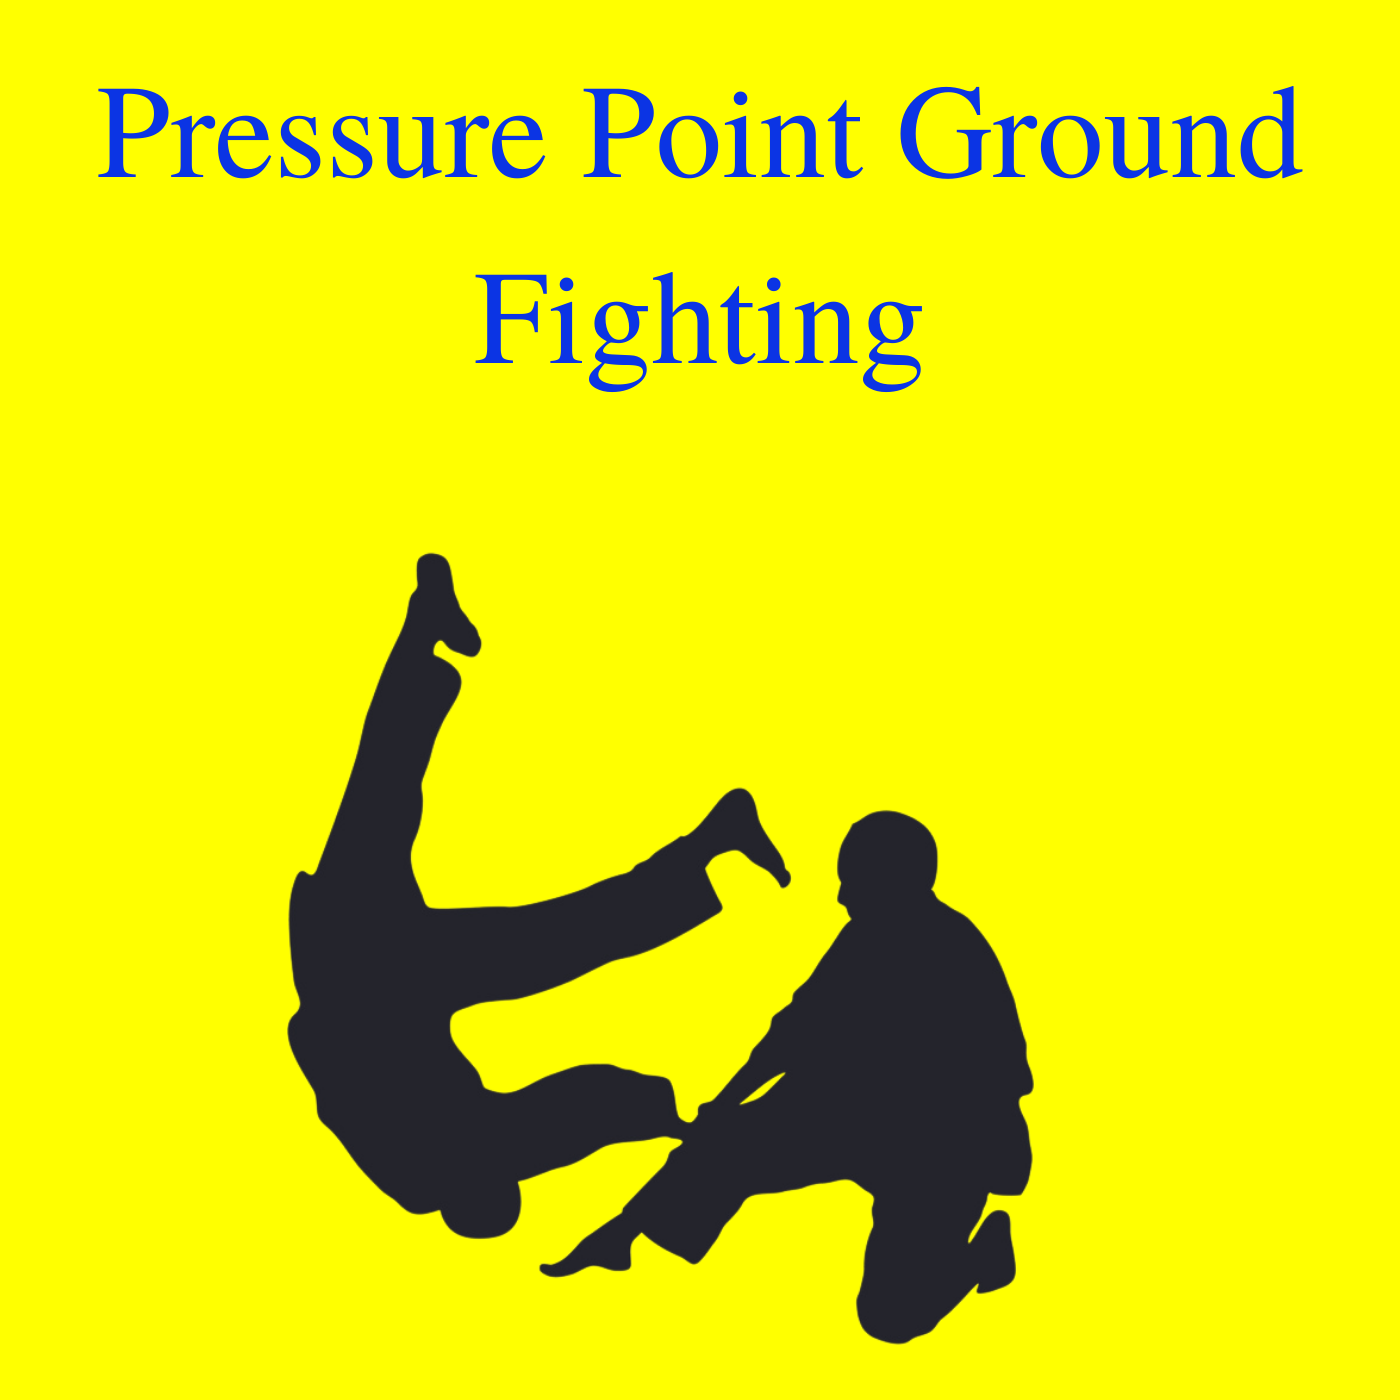 * Pressure Point Ground Fighting